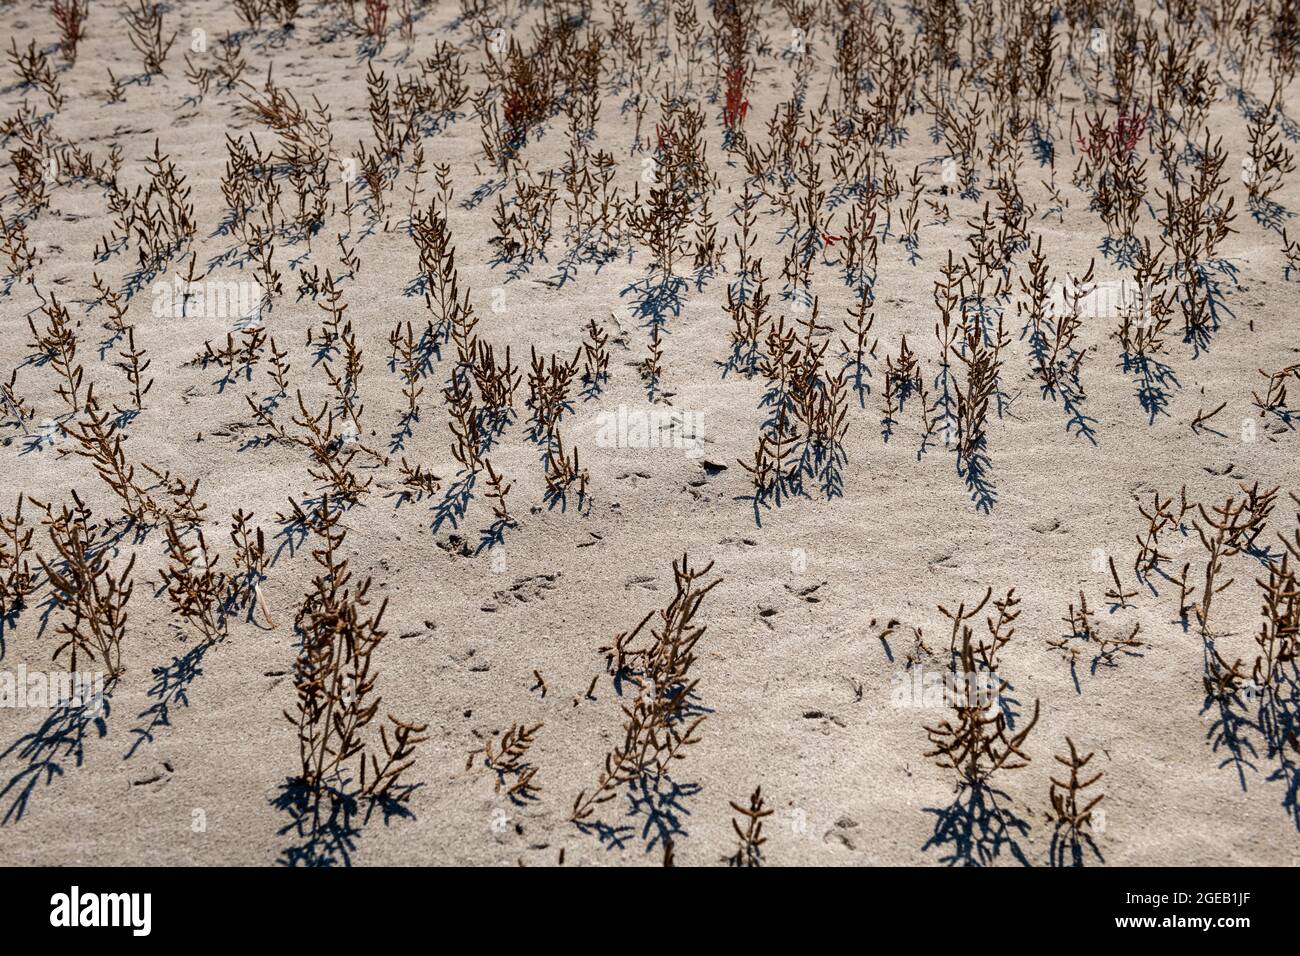 Piante che muoiono o muoiono su terreni aridi provocate dal cambiamento climatico. Foto Stock